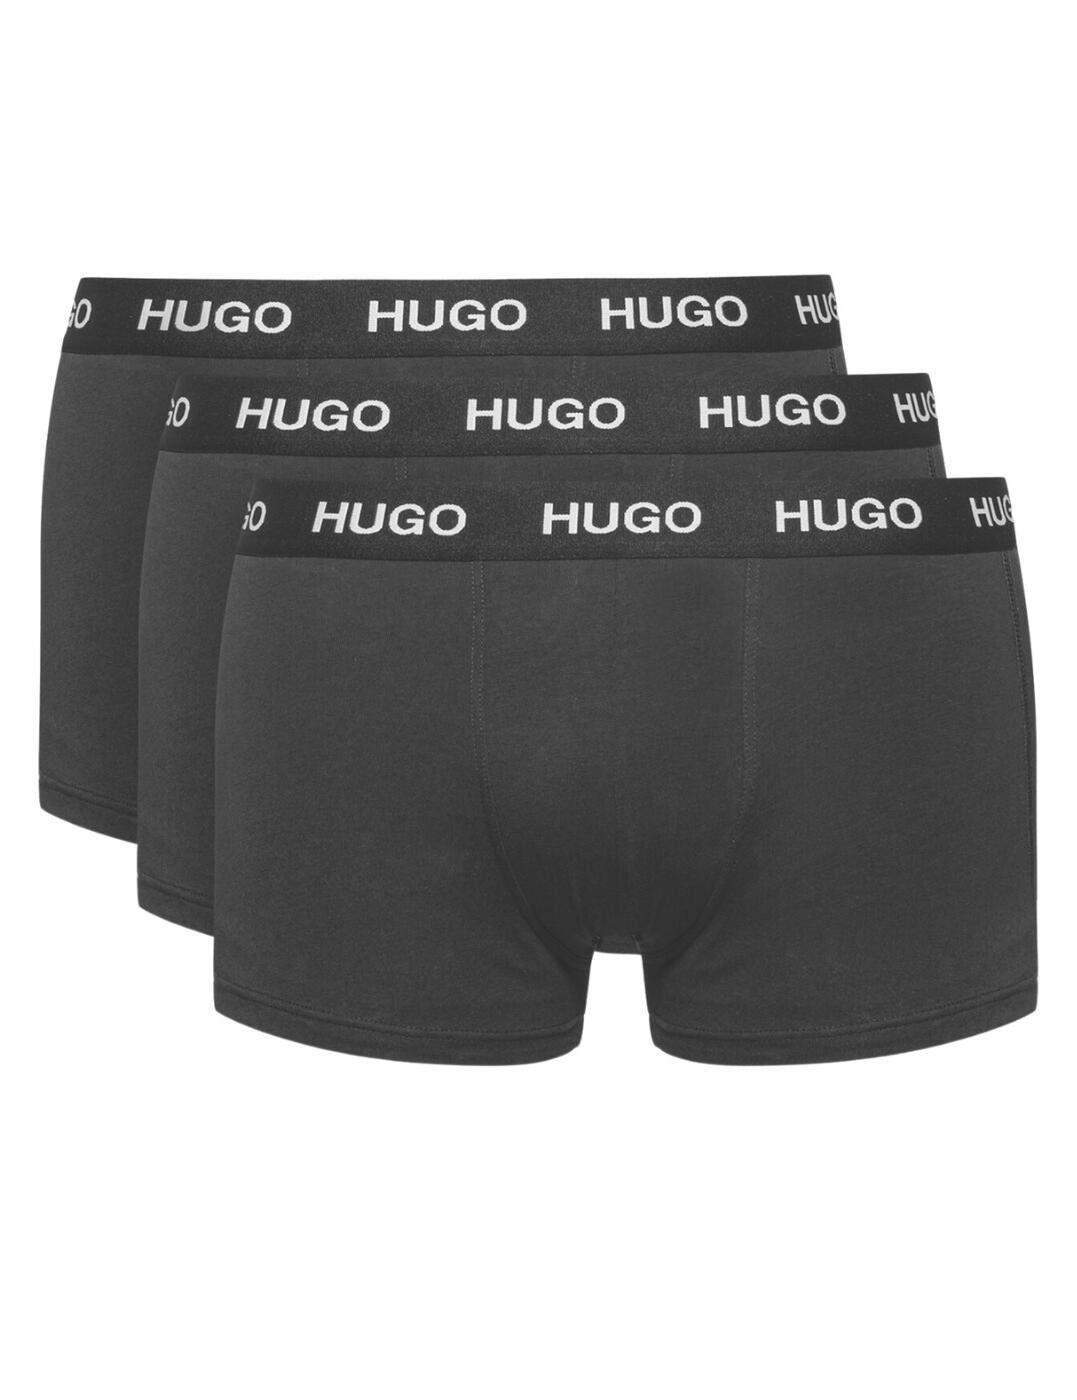 Hugo Boss Boxers 3 Pack Black 